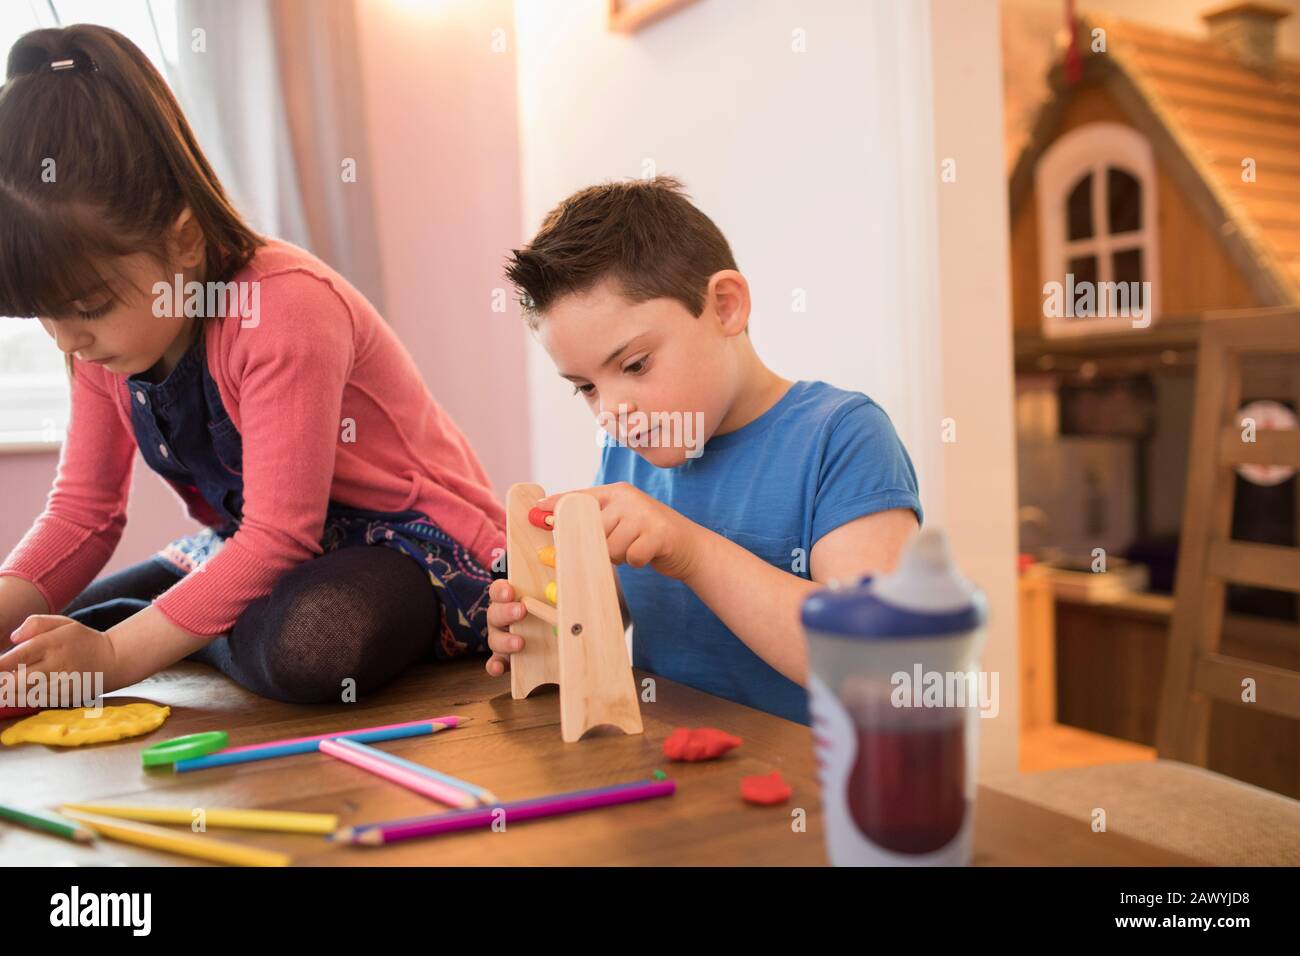 Fokussierter Junge mit Down-Syndrom, der mit Spielzeug am Tisch spielt Stockfoto